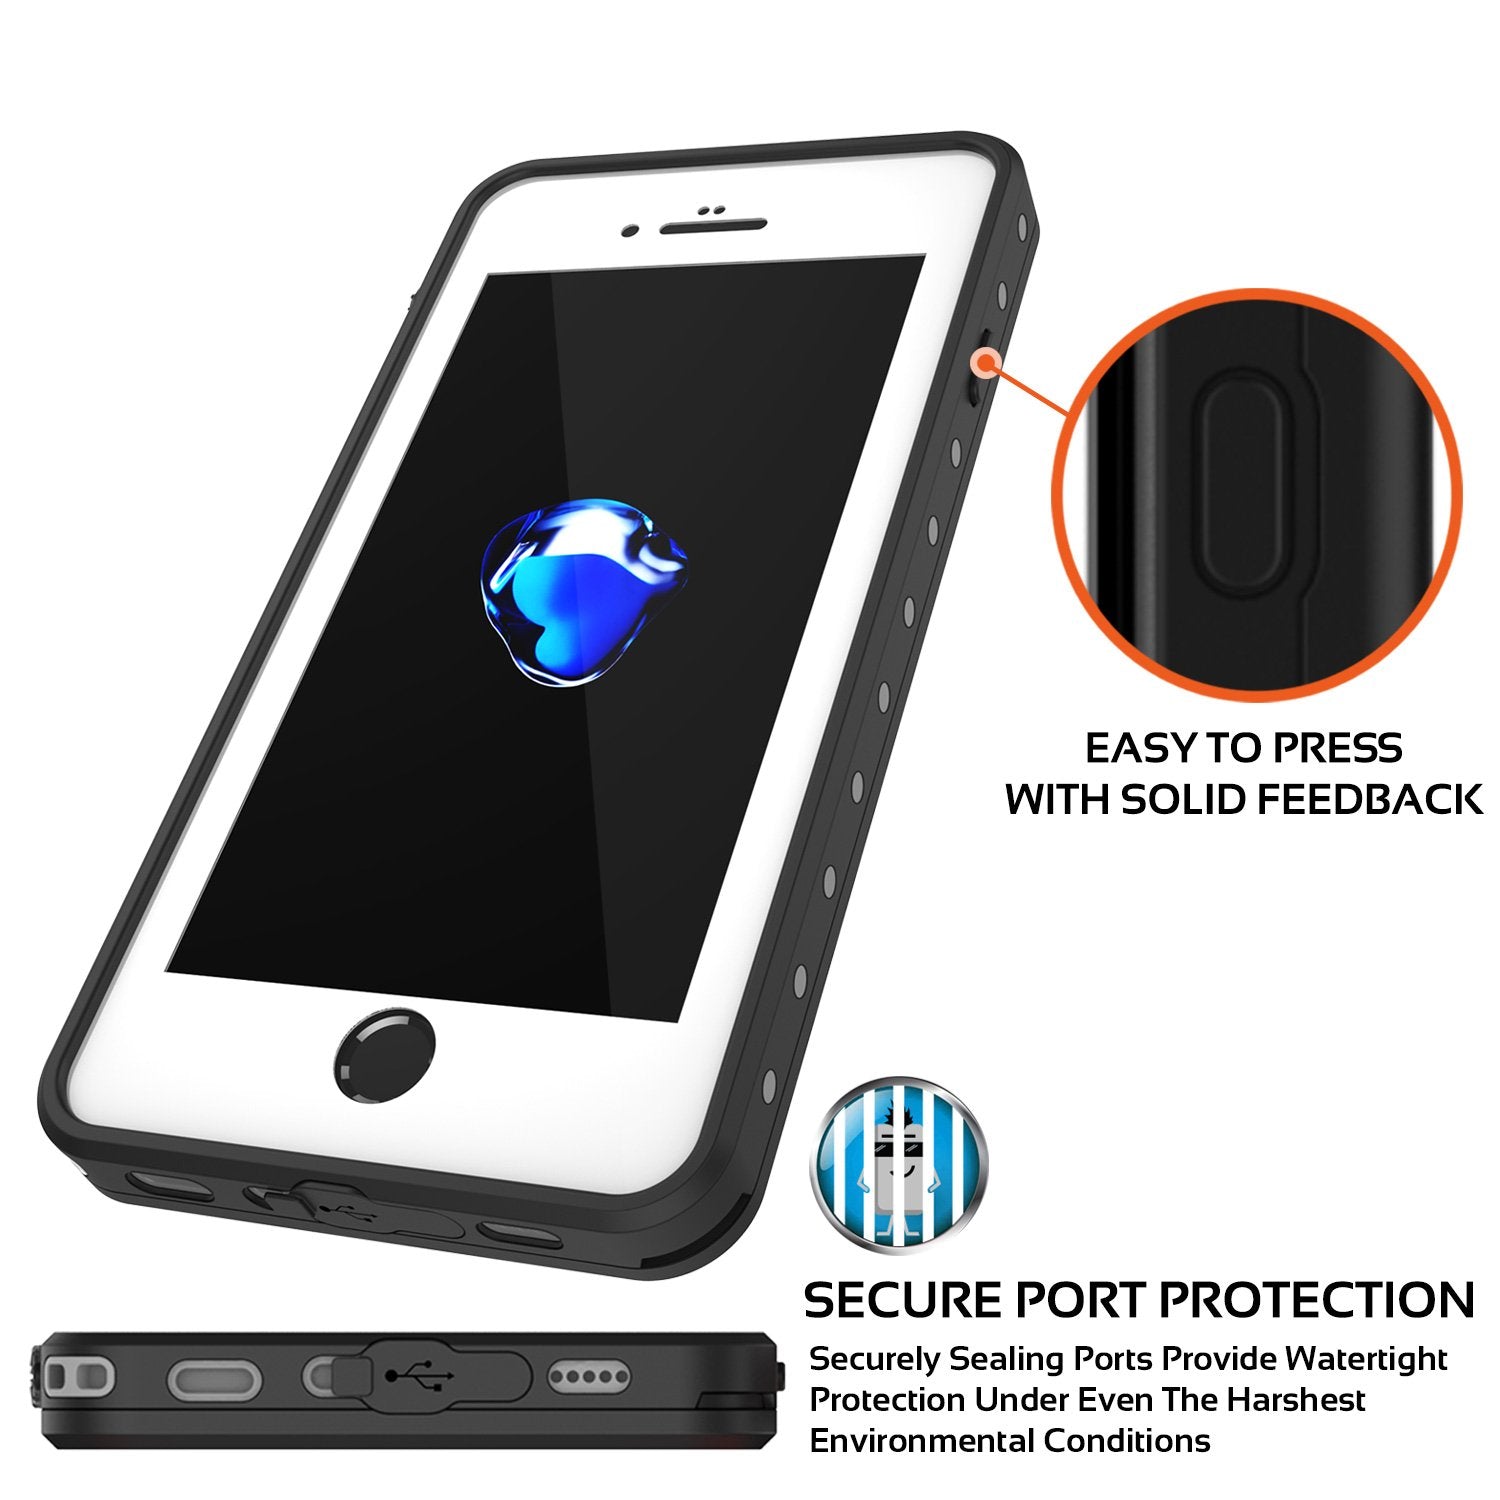 iPhone 7+ Plus Waterproof IP68 Case, Punkcase [Clear] [StudStar Series] [Slim Fit] [Dirtproof]